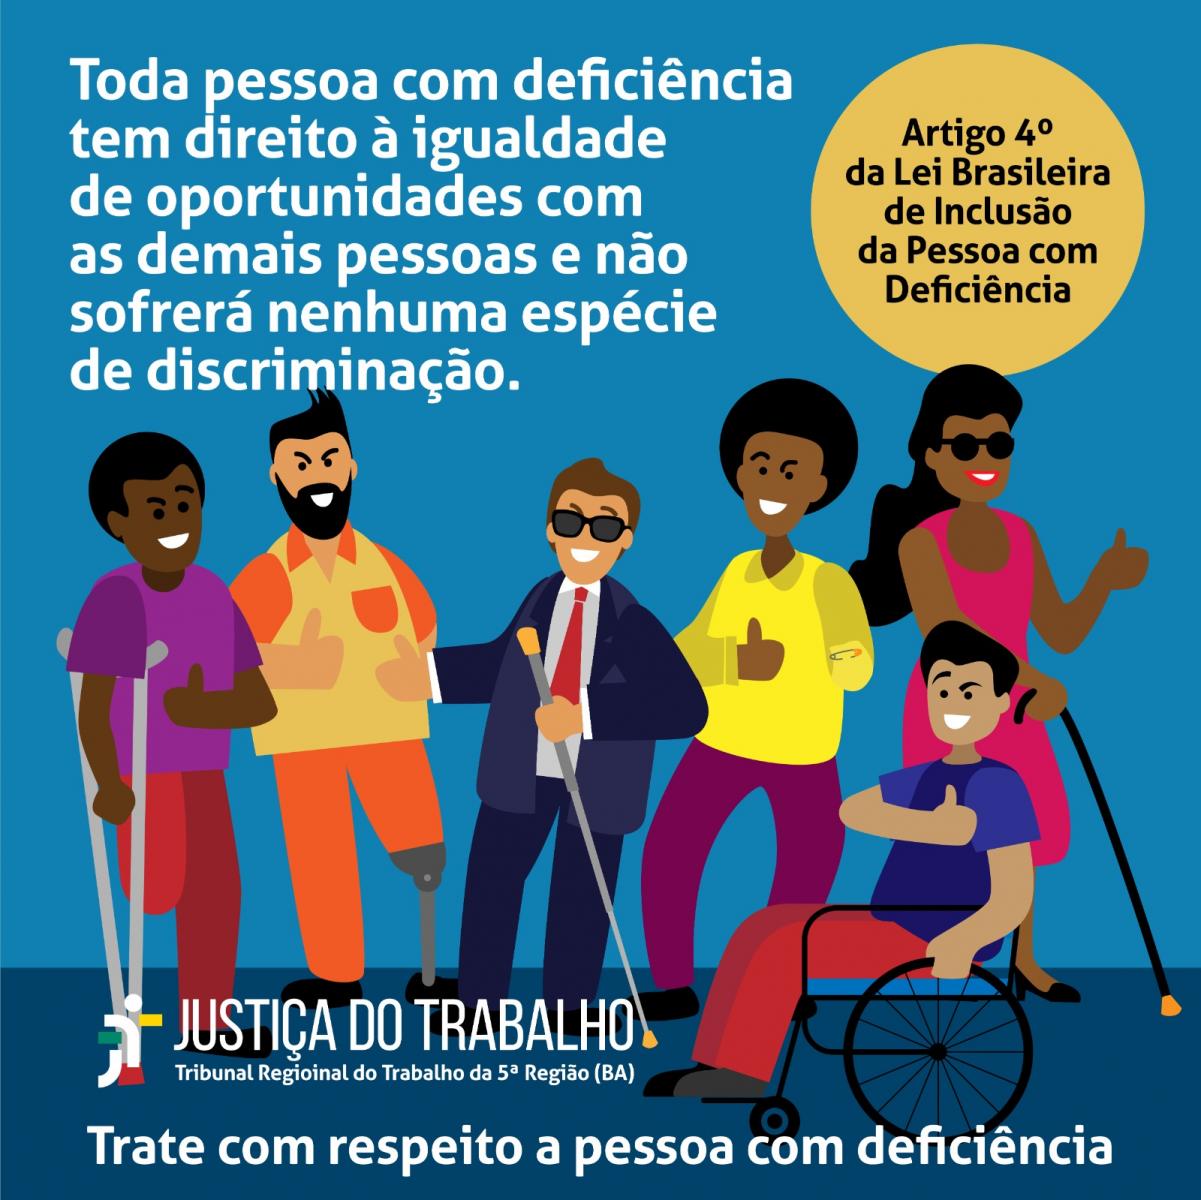  “Artigo 4º da Lei Brasileira de Inclusão da Pessoa com Deficiência”. Na parte inferior a logomarca da Justiça do Trabalho e a assinatura “Trate com respeito a pessoa com deficiência”.